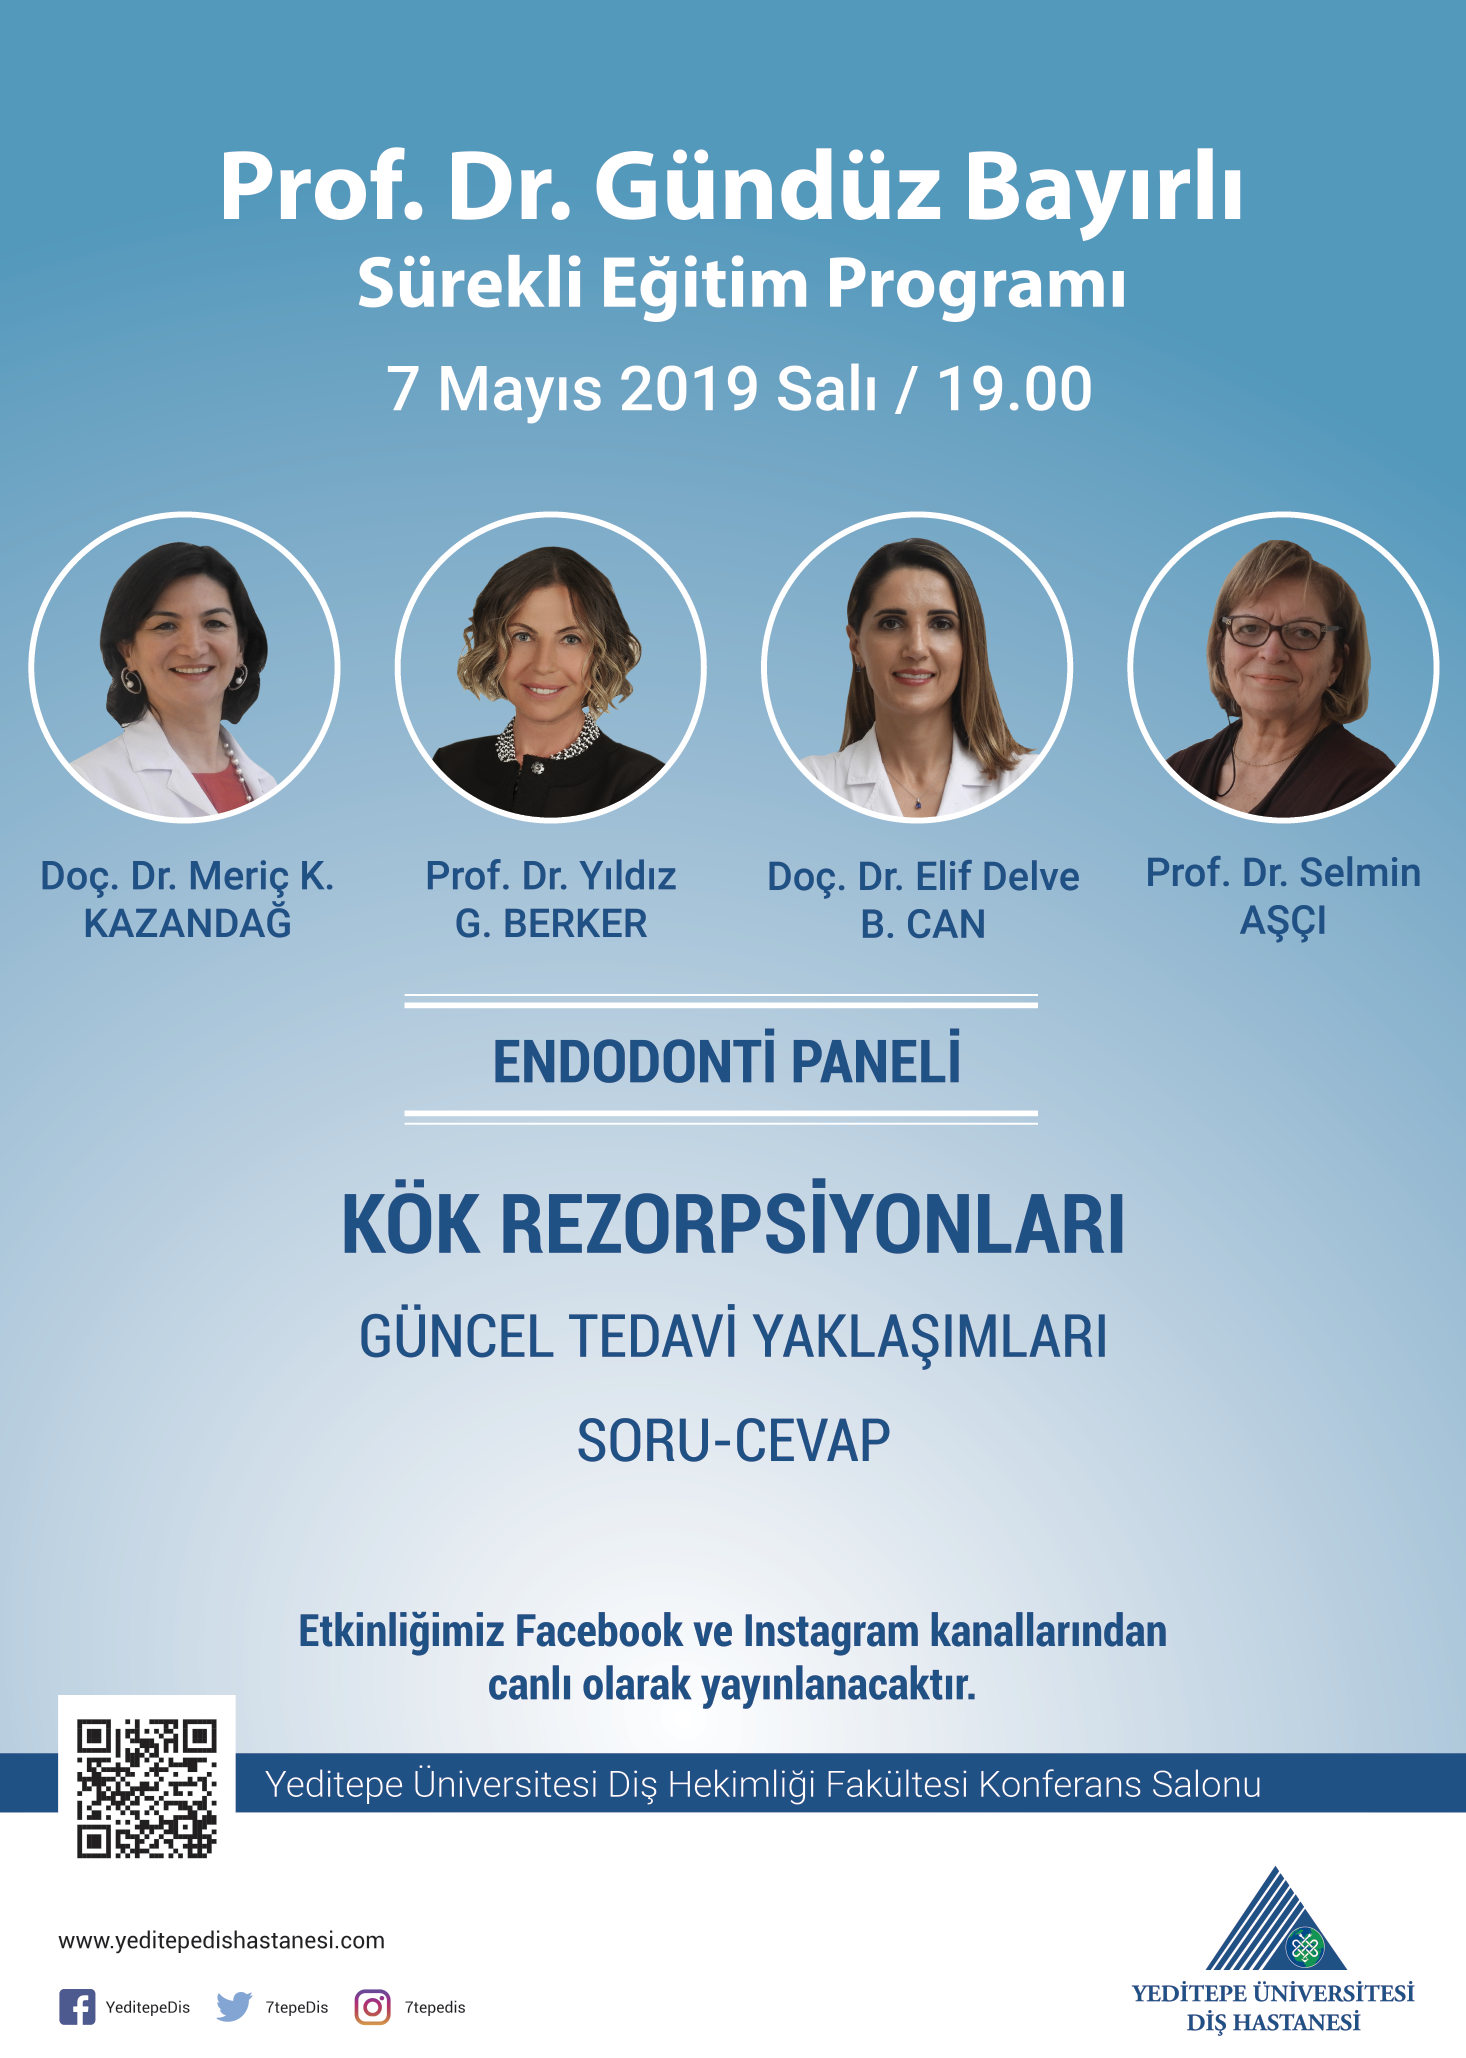 Yeditepe Üniversitesi Diş Hastanesi - Kök Rezorpsiyonları Paneli